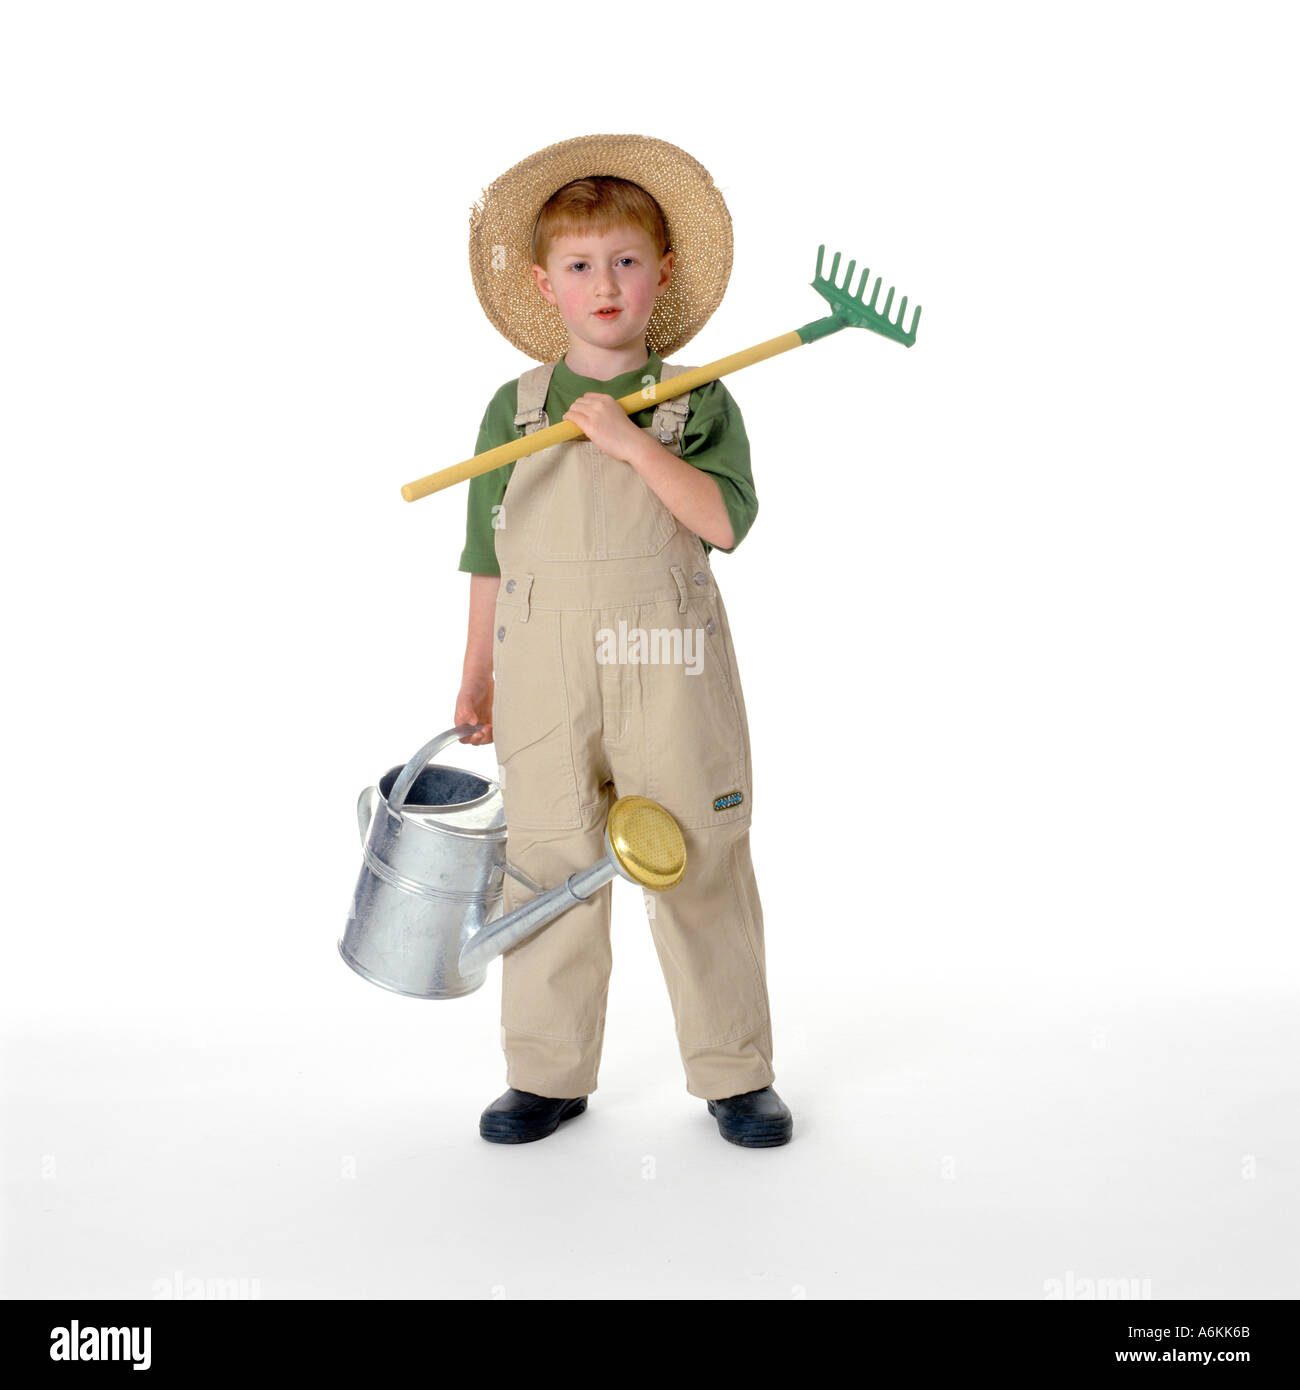 Kleiner Junge als Gärtner verkleidet Stockfoto